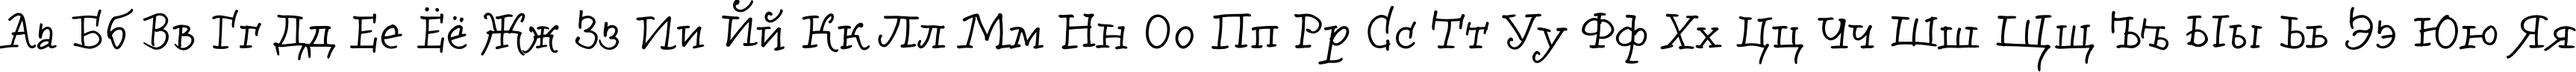 Пример написания русского алфавита шрифтом Bowman